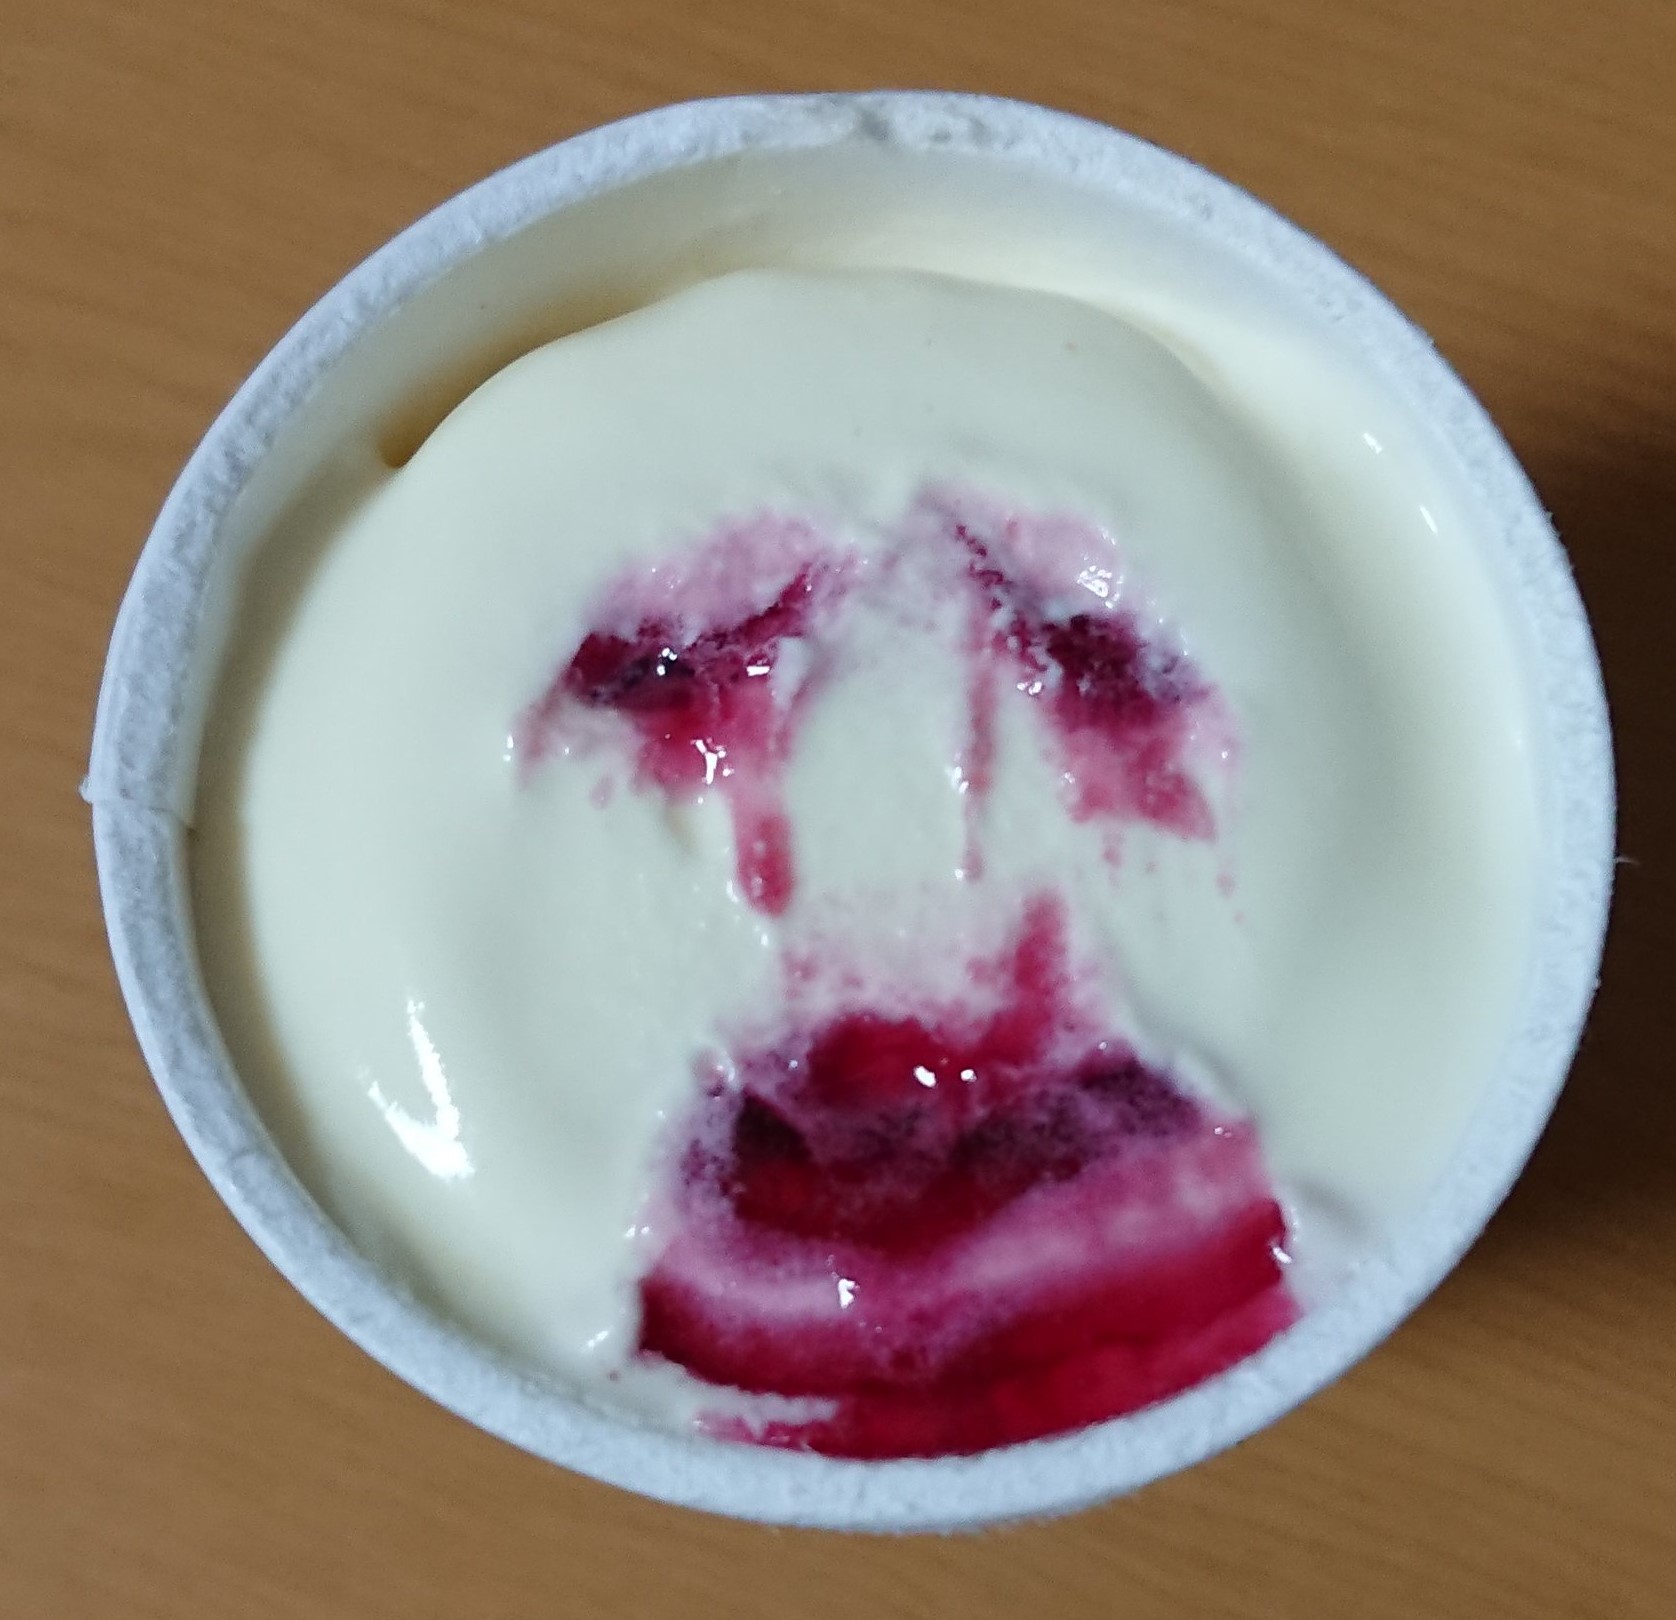 Panapp ice cream sculpting - netizen sculpt bleeding face